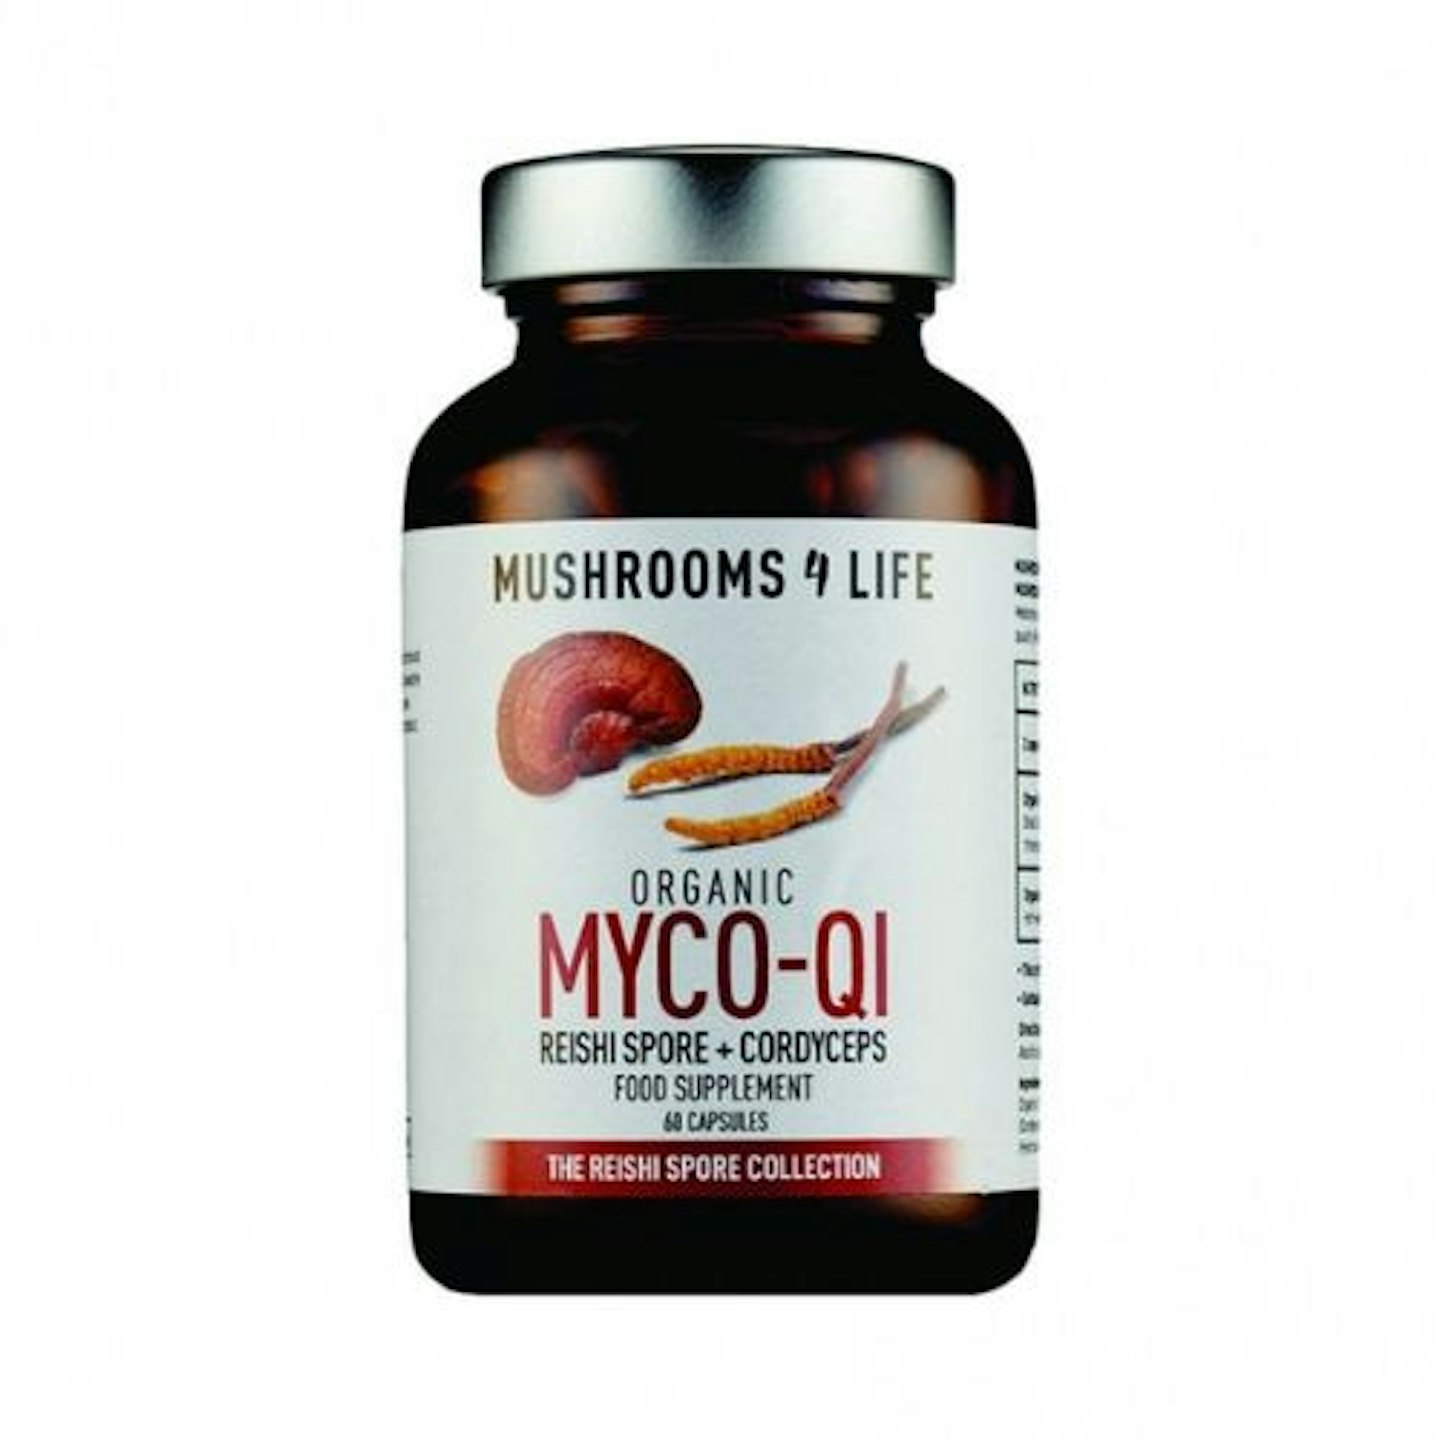 Mushrooms 4 Life Organic Myco-Qi